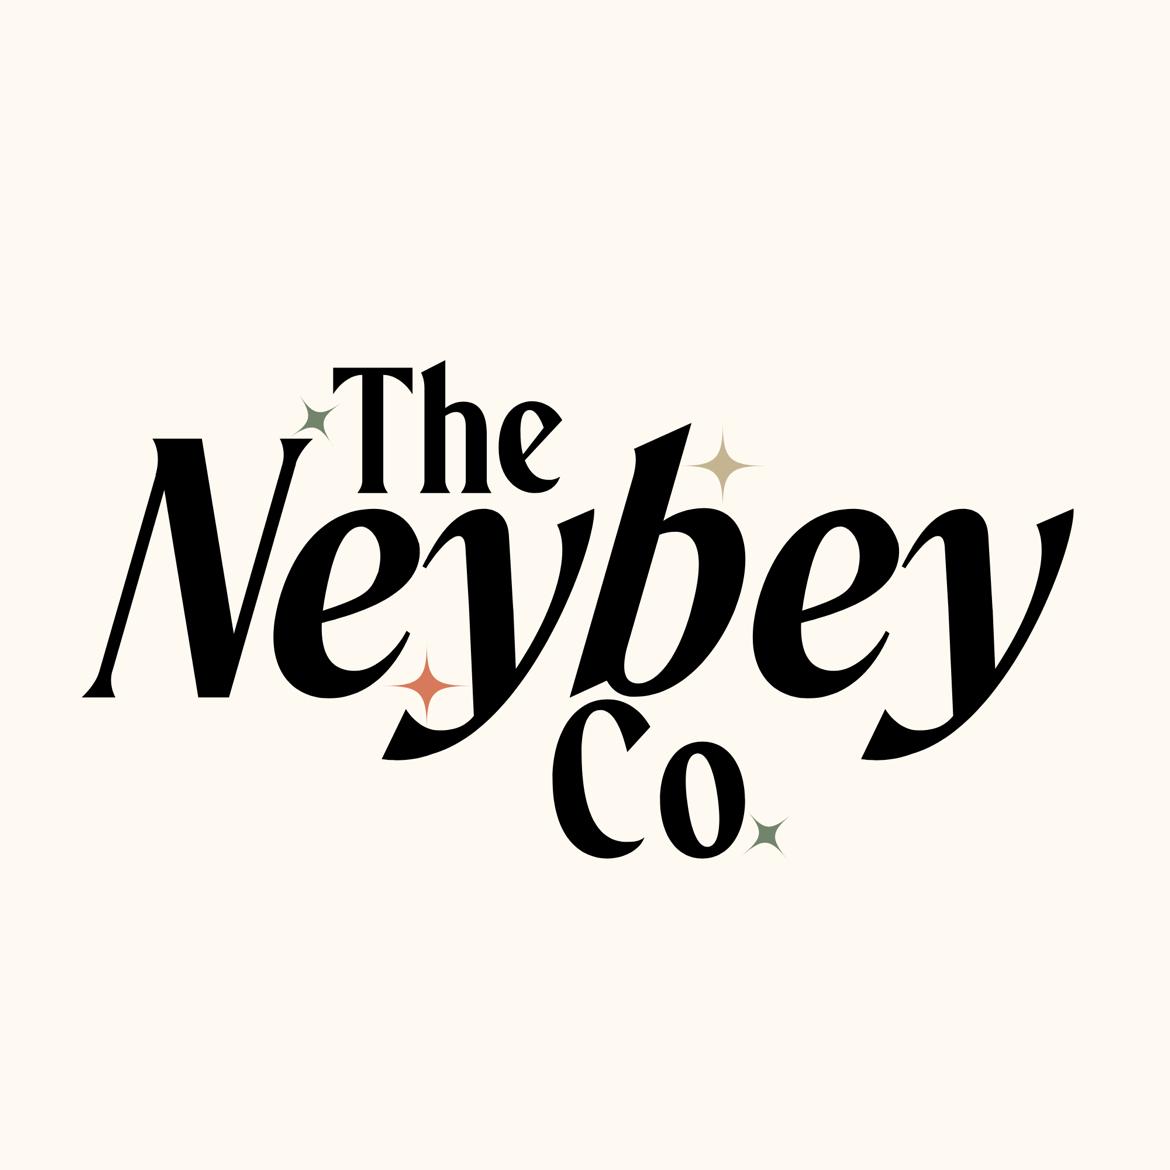 Neybey Co